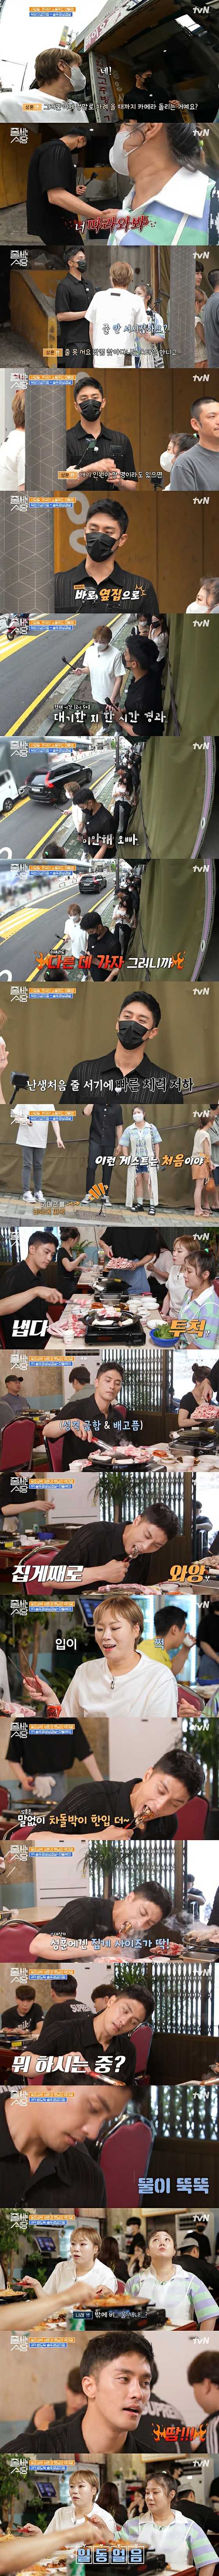 Nam diễn viên SungHoon "thái độ + mất vệ sinh" trong chương trình gây tranh cãi ... Ăn xong cầm kẹp nấu ăn mà toát mồ hôi hột